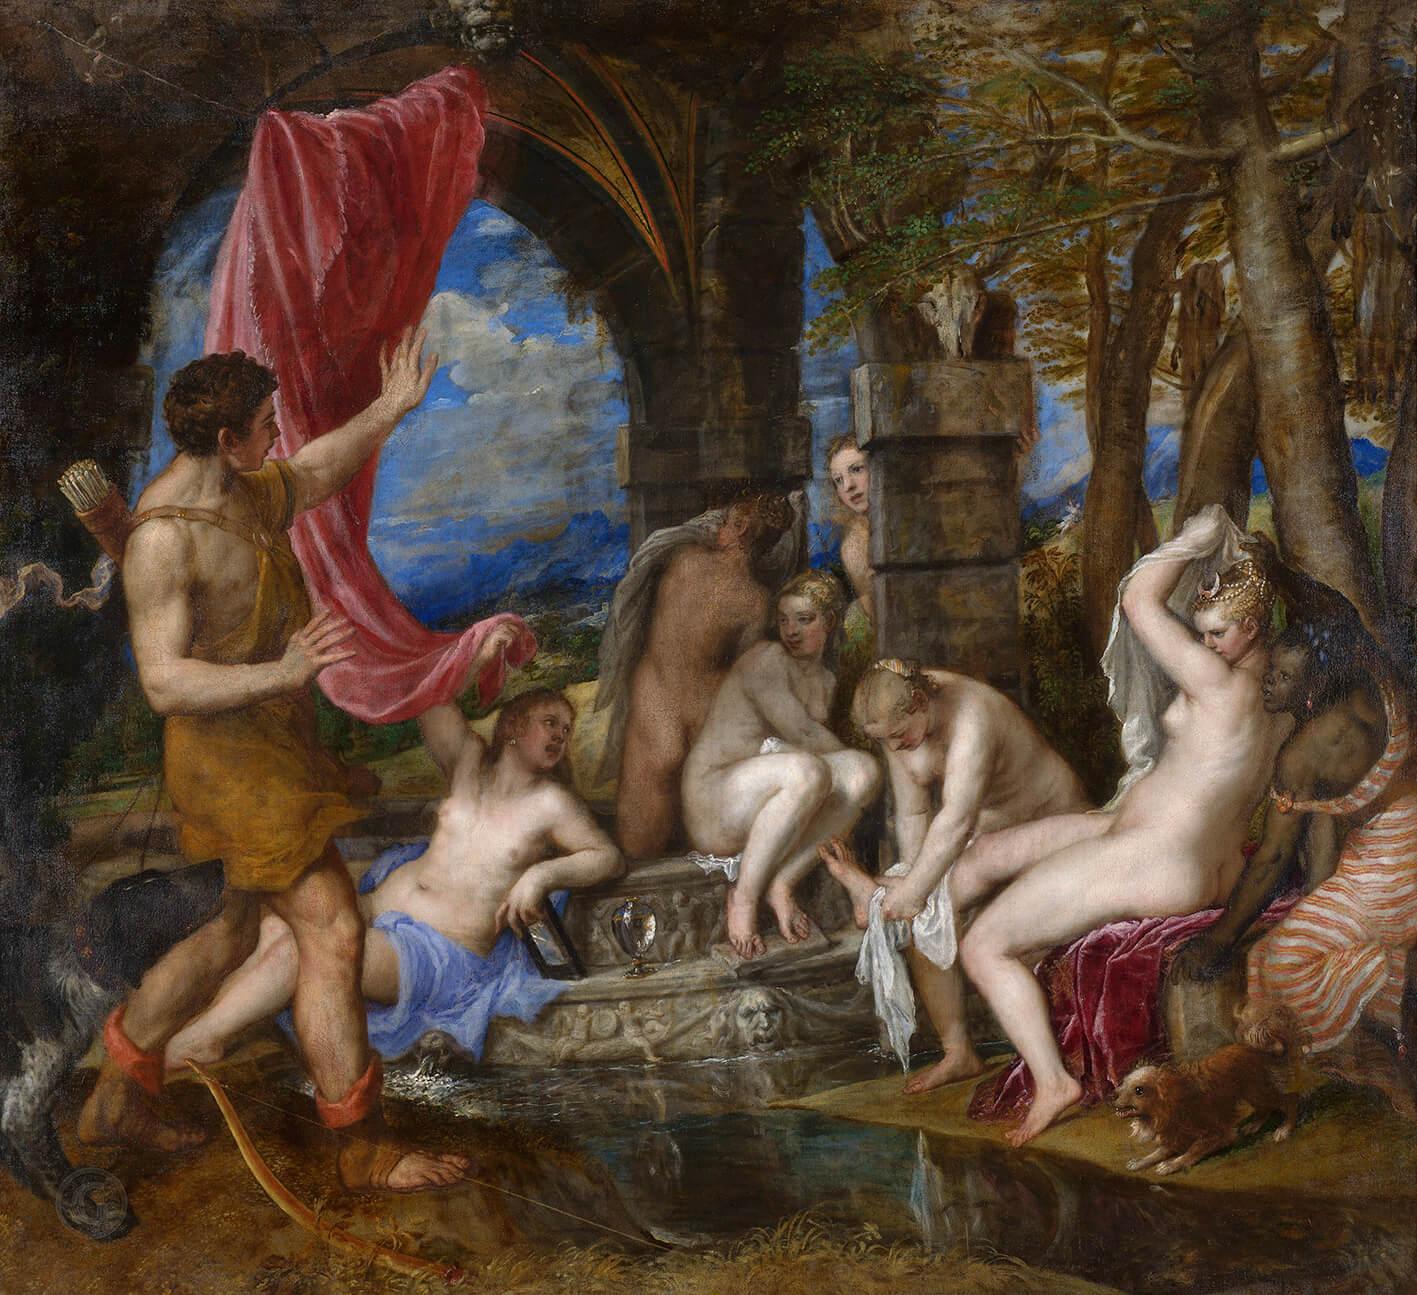 Pilt Titian - Diana kple Actaeon 2